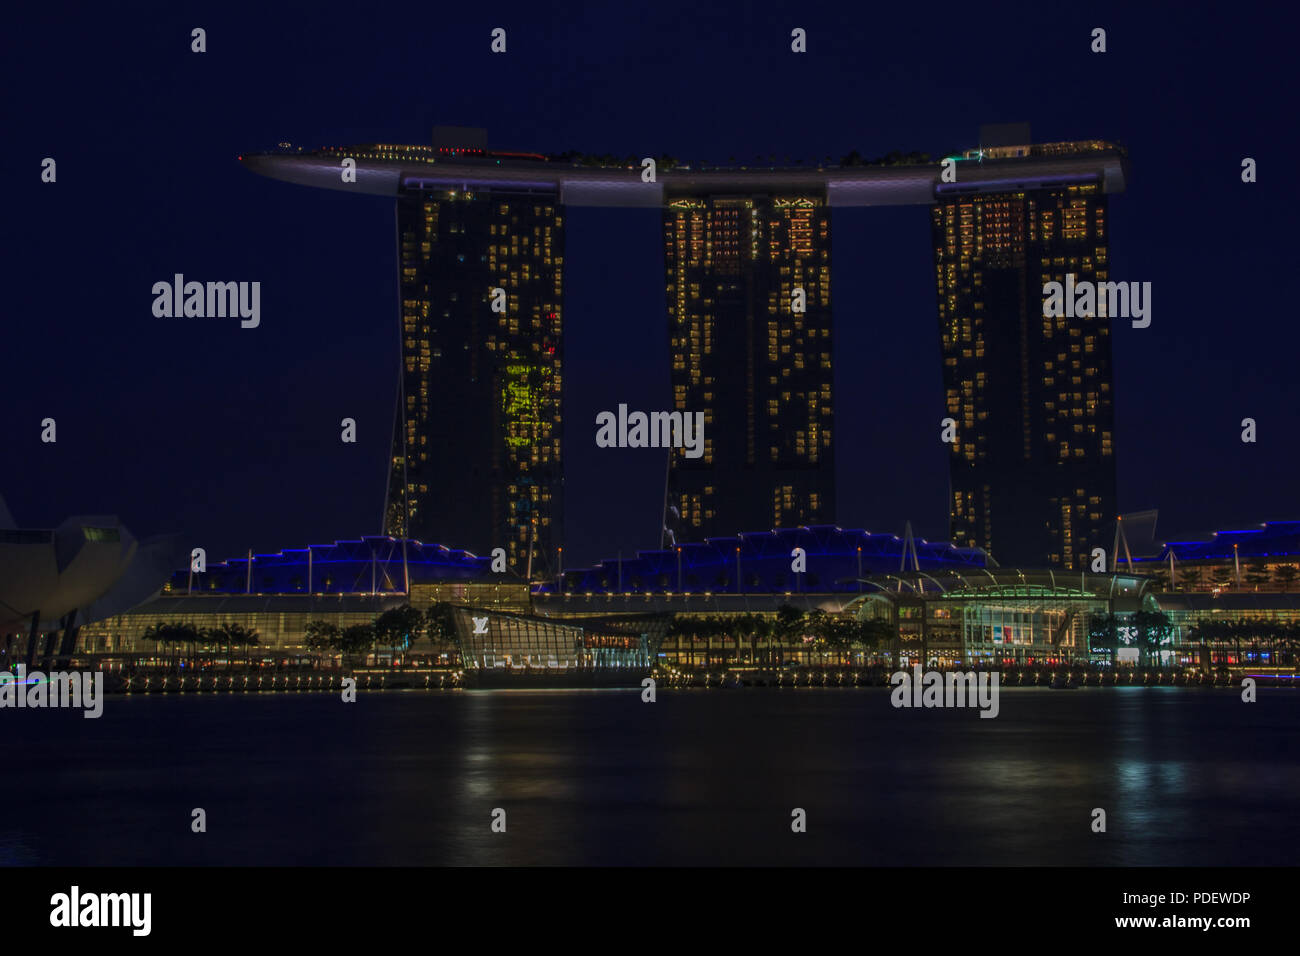 Singapour, Singapour - 20 janvier : Le conseil de l'hôtel en forme de surf luxueuses et Marina Bay Sands casino et lotus-musée ArtScience inspiré avant sunse Banque D'Images